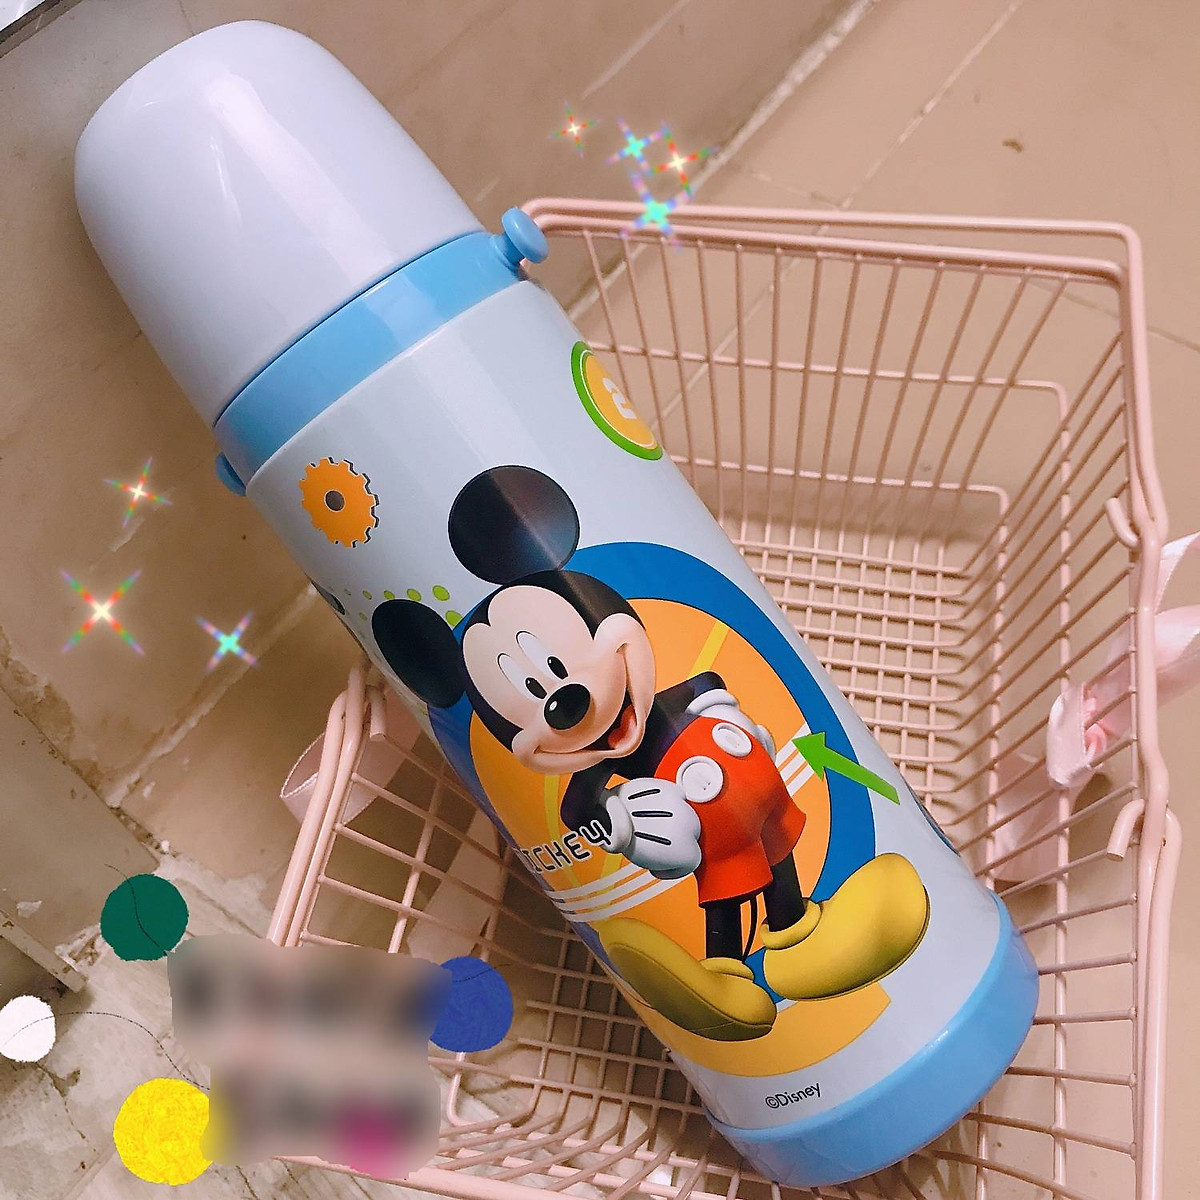 Bình nước giữ nhiệt hình chuột Mickey màu xanh cho trẻ em, các bé ...